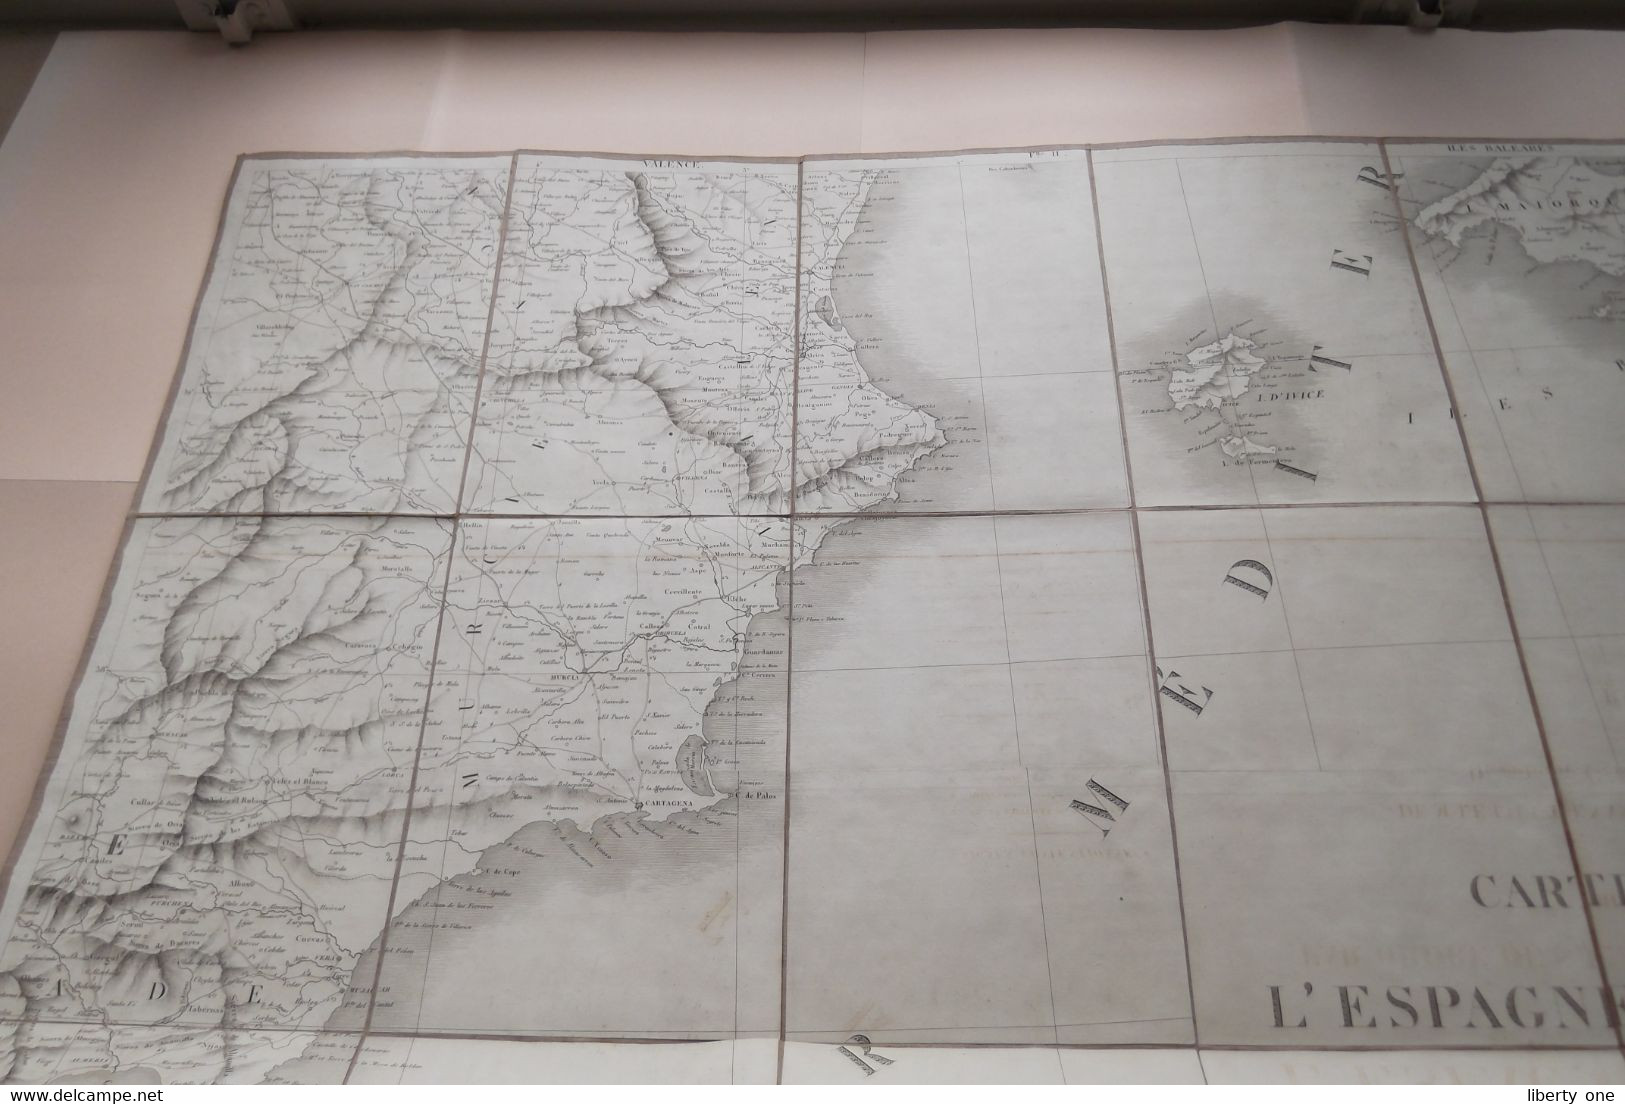 ESPAGNE Et PORTUGAL Partie SUD EST Gravée Richard WAHL Carte Itinéraire 1823 (Katoen / Cotton - Ch. Picquet) 92 X 68 Cm. - Europe